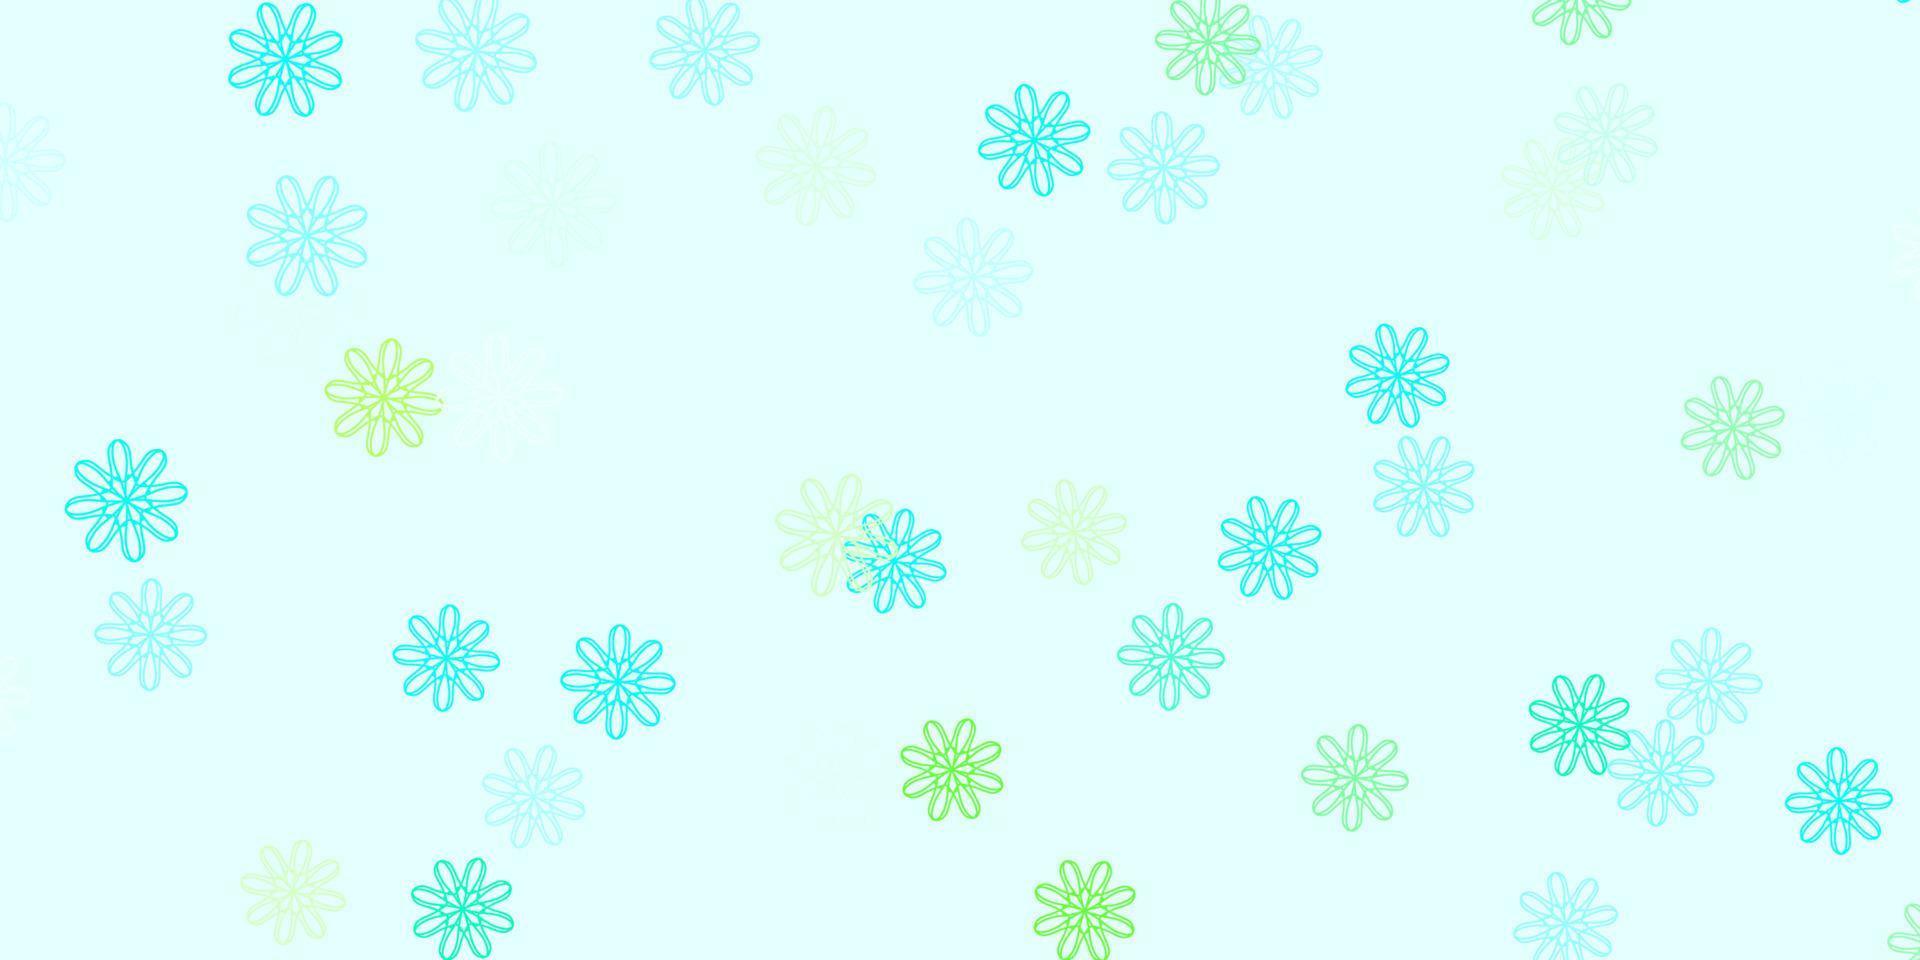 ljusblå, grön vektor naturlig layout med blommor.